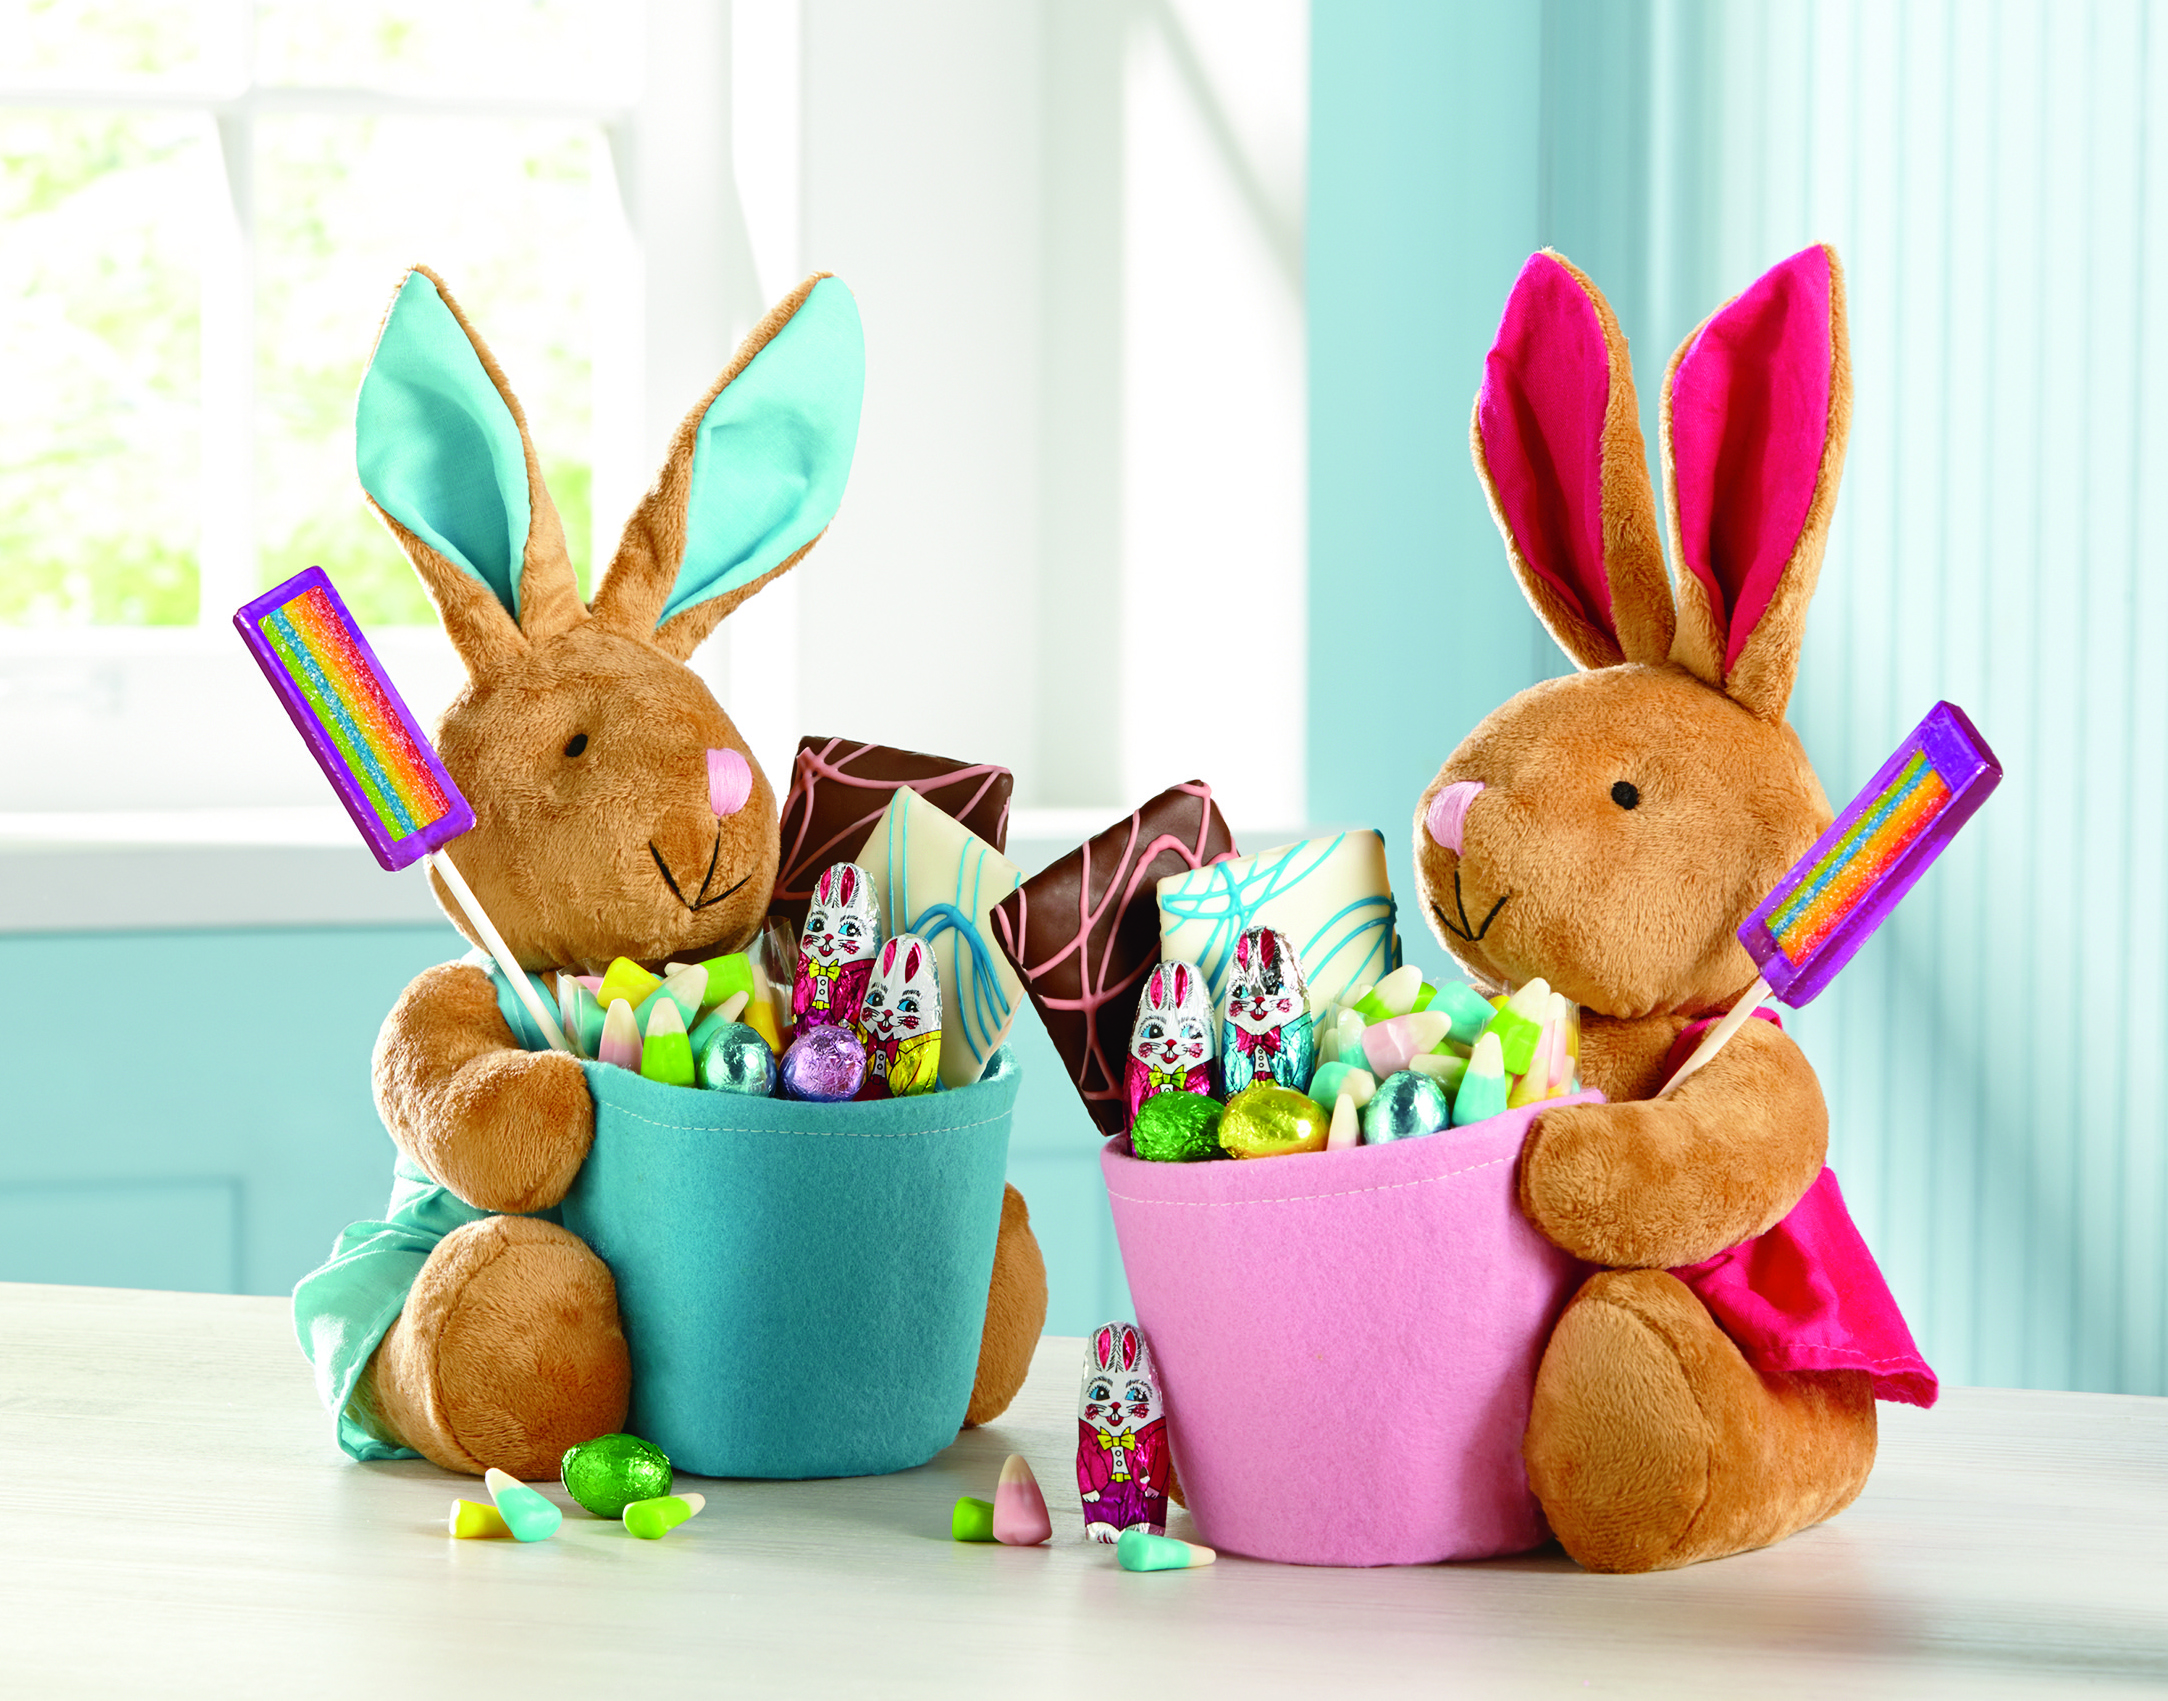 Happy Easter celebration baskets delight kids.